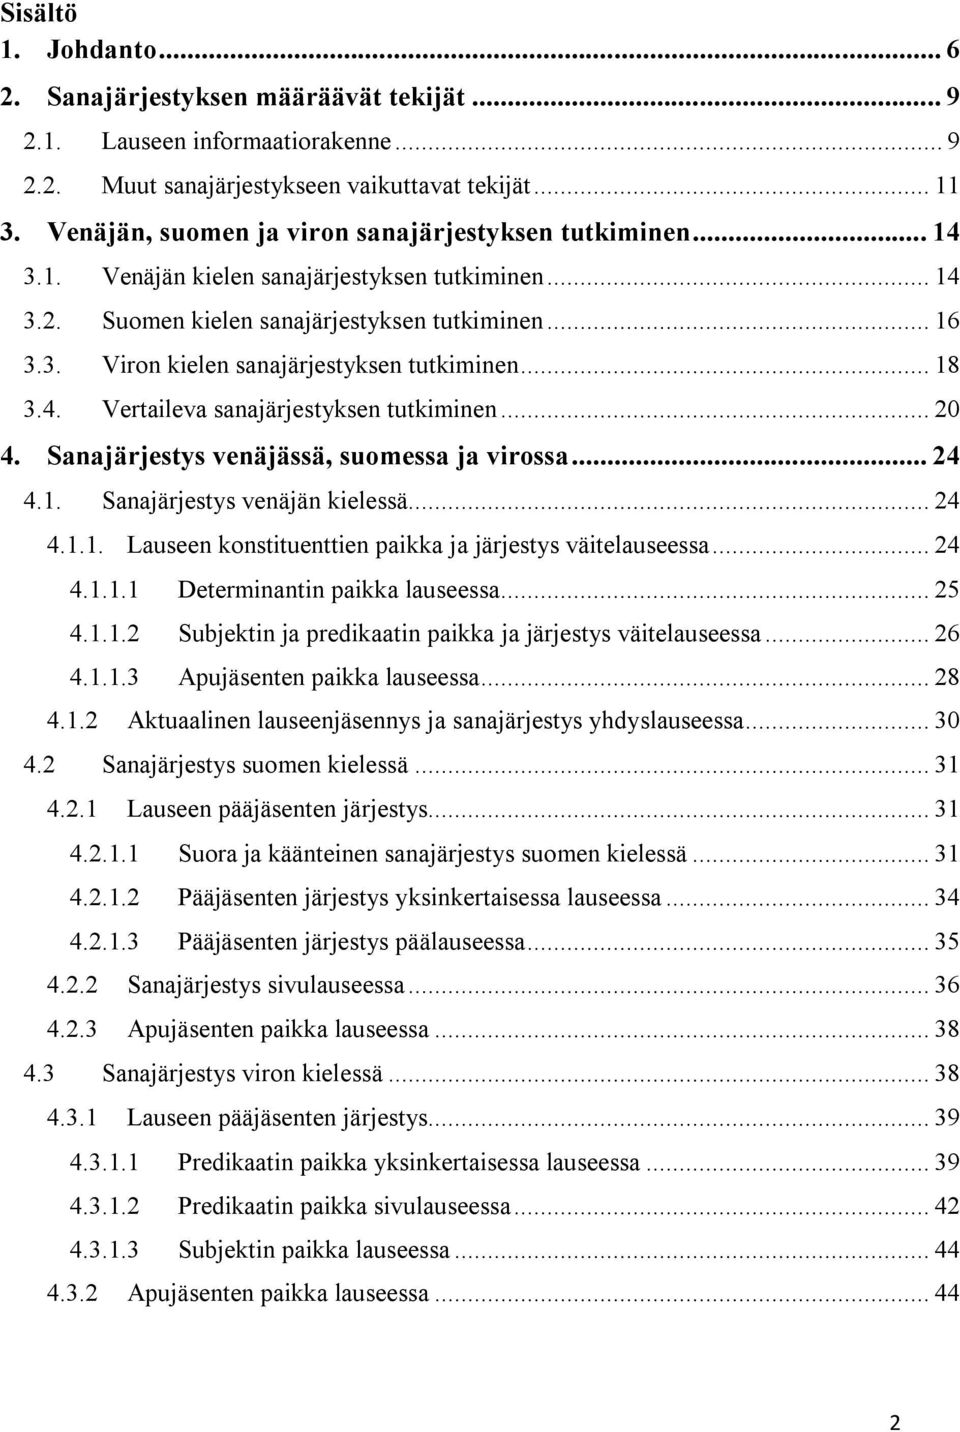 .. 18 3.4. Vertaileva sanajärjestyksen tutkiminen... 20 4. Sanajärjestys venäjässä, suomessa ja virossa... 24 4.1. Sanajärjestys venäjän kielessä... 24 4.1.1. Lauseen konstituenttien paikka ja järjestys väitelauseessa.